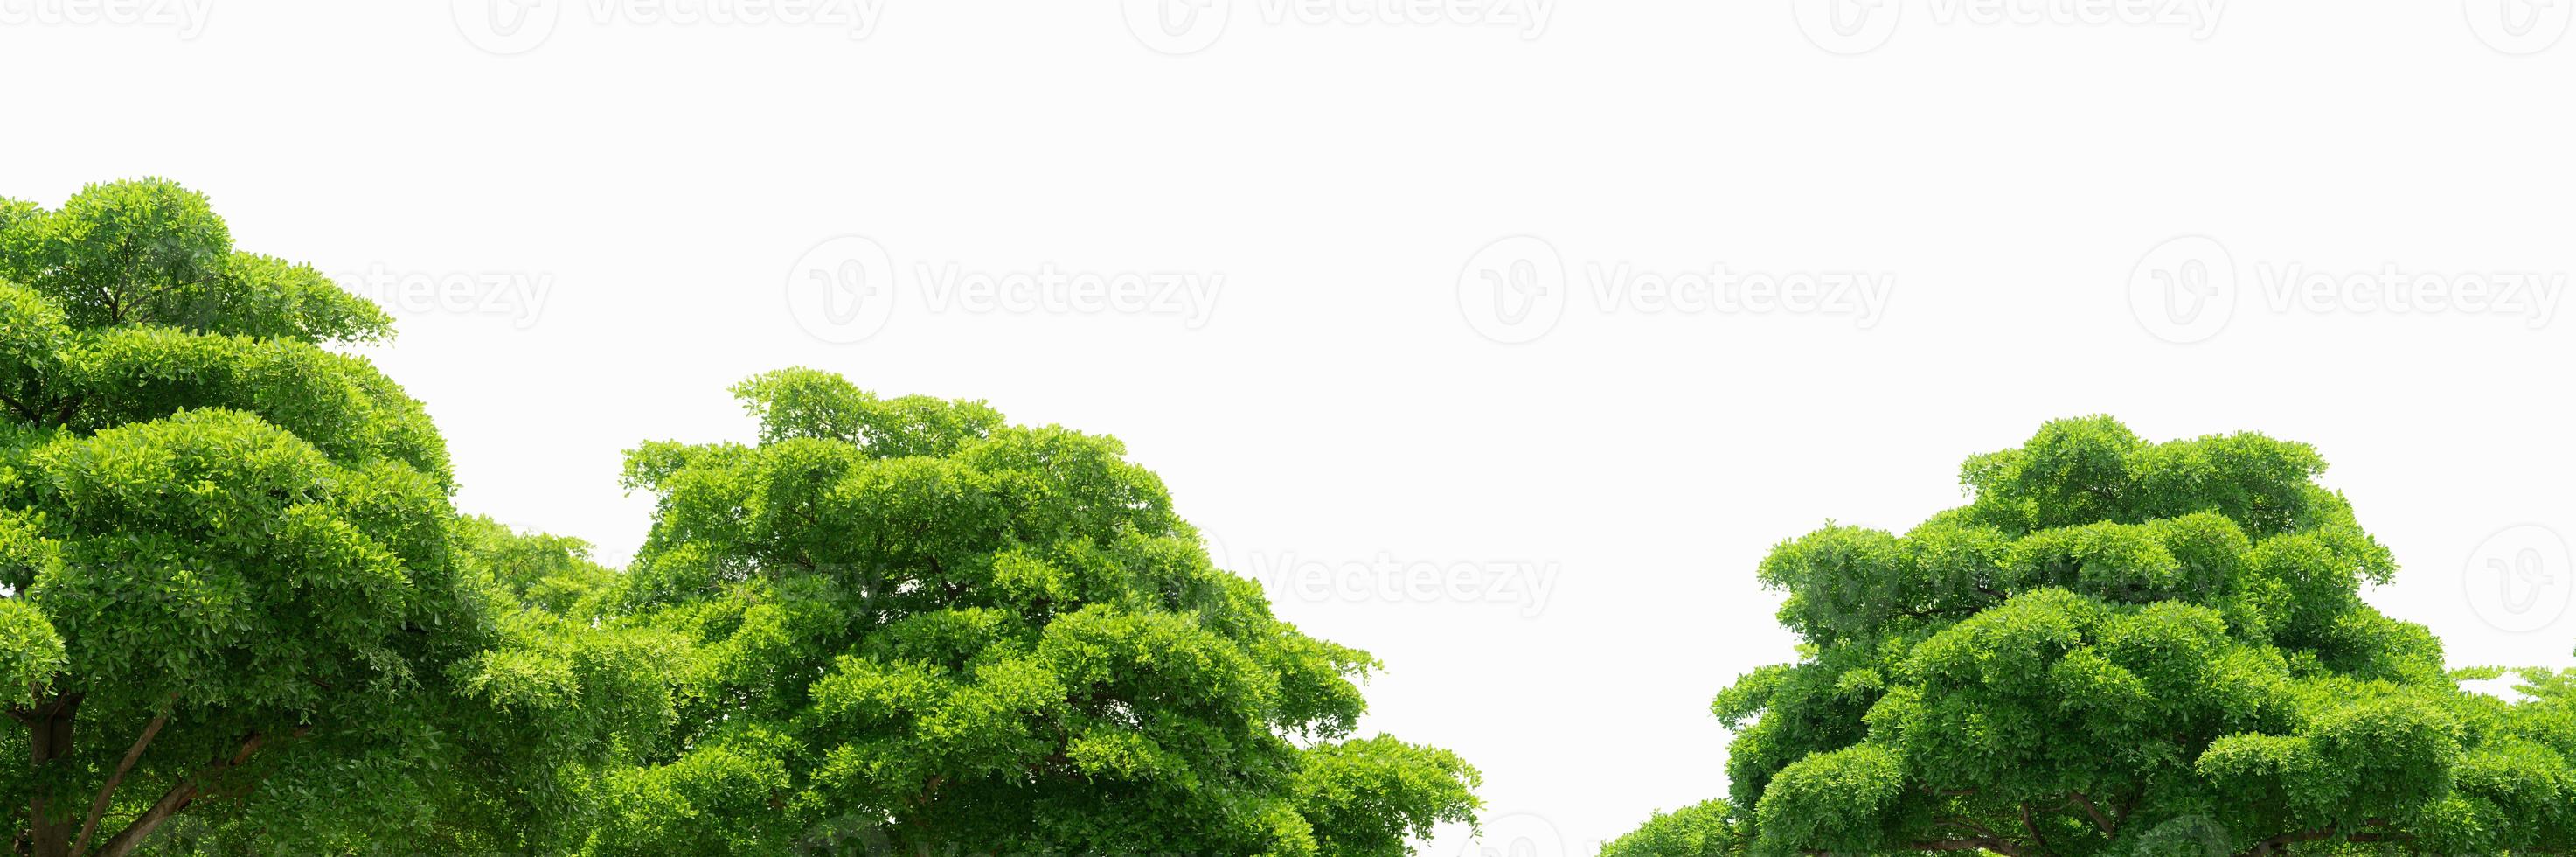 träd med gröna löv isolerad på vit bakgrund. träd med ljusgröna löv på solig dag. växter för arkitektur dekorativa. buske av träd med kvist och skaft. foto